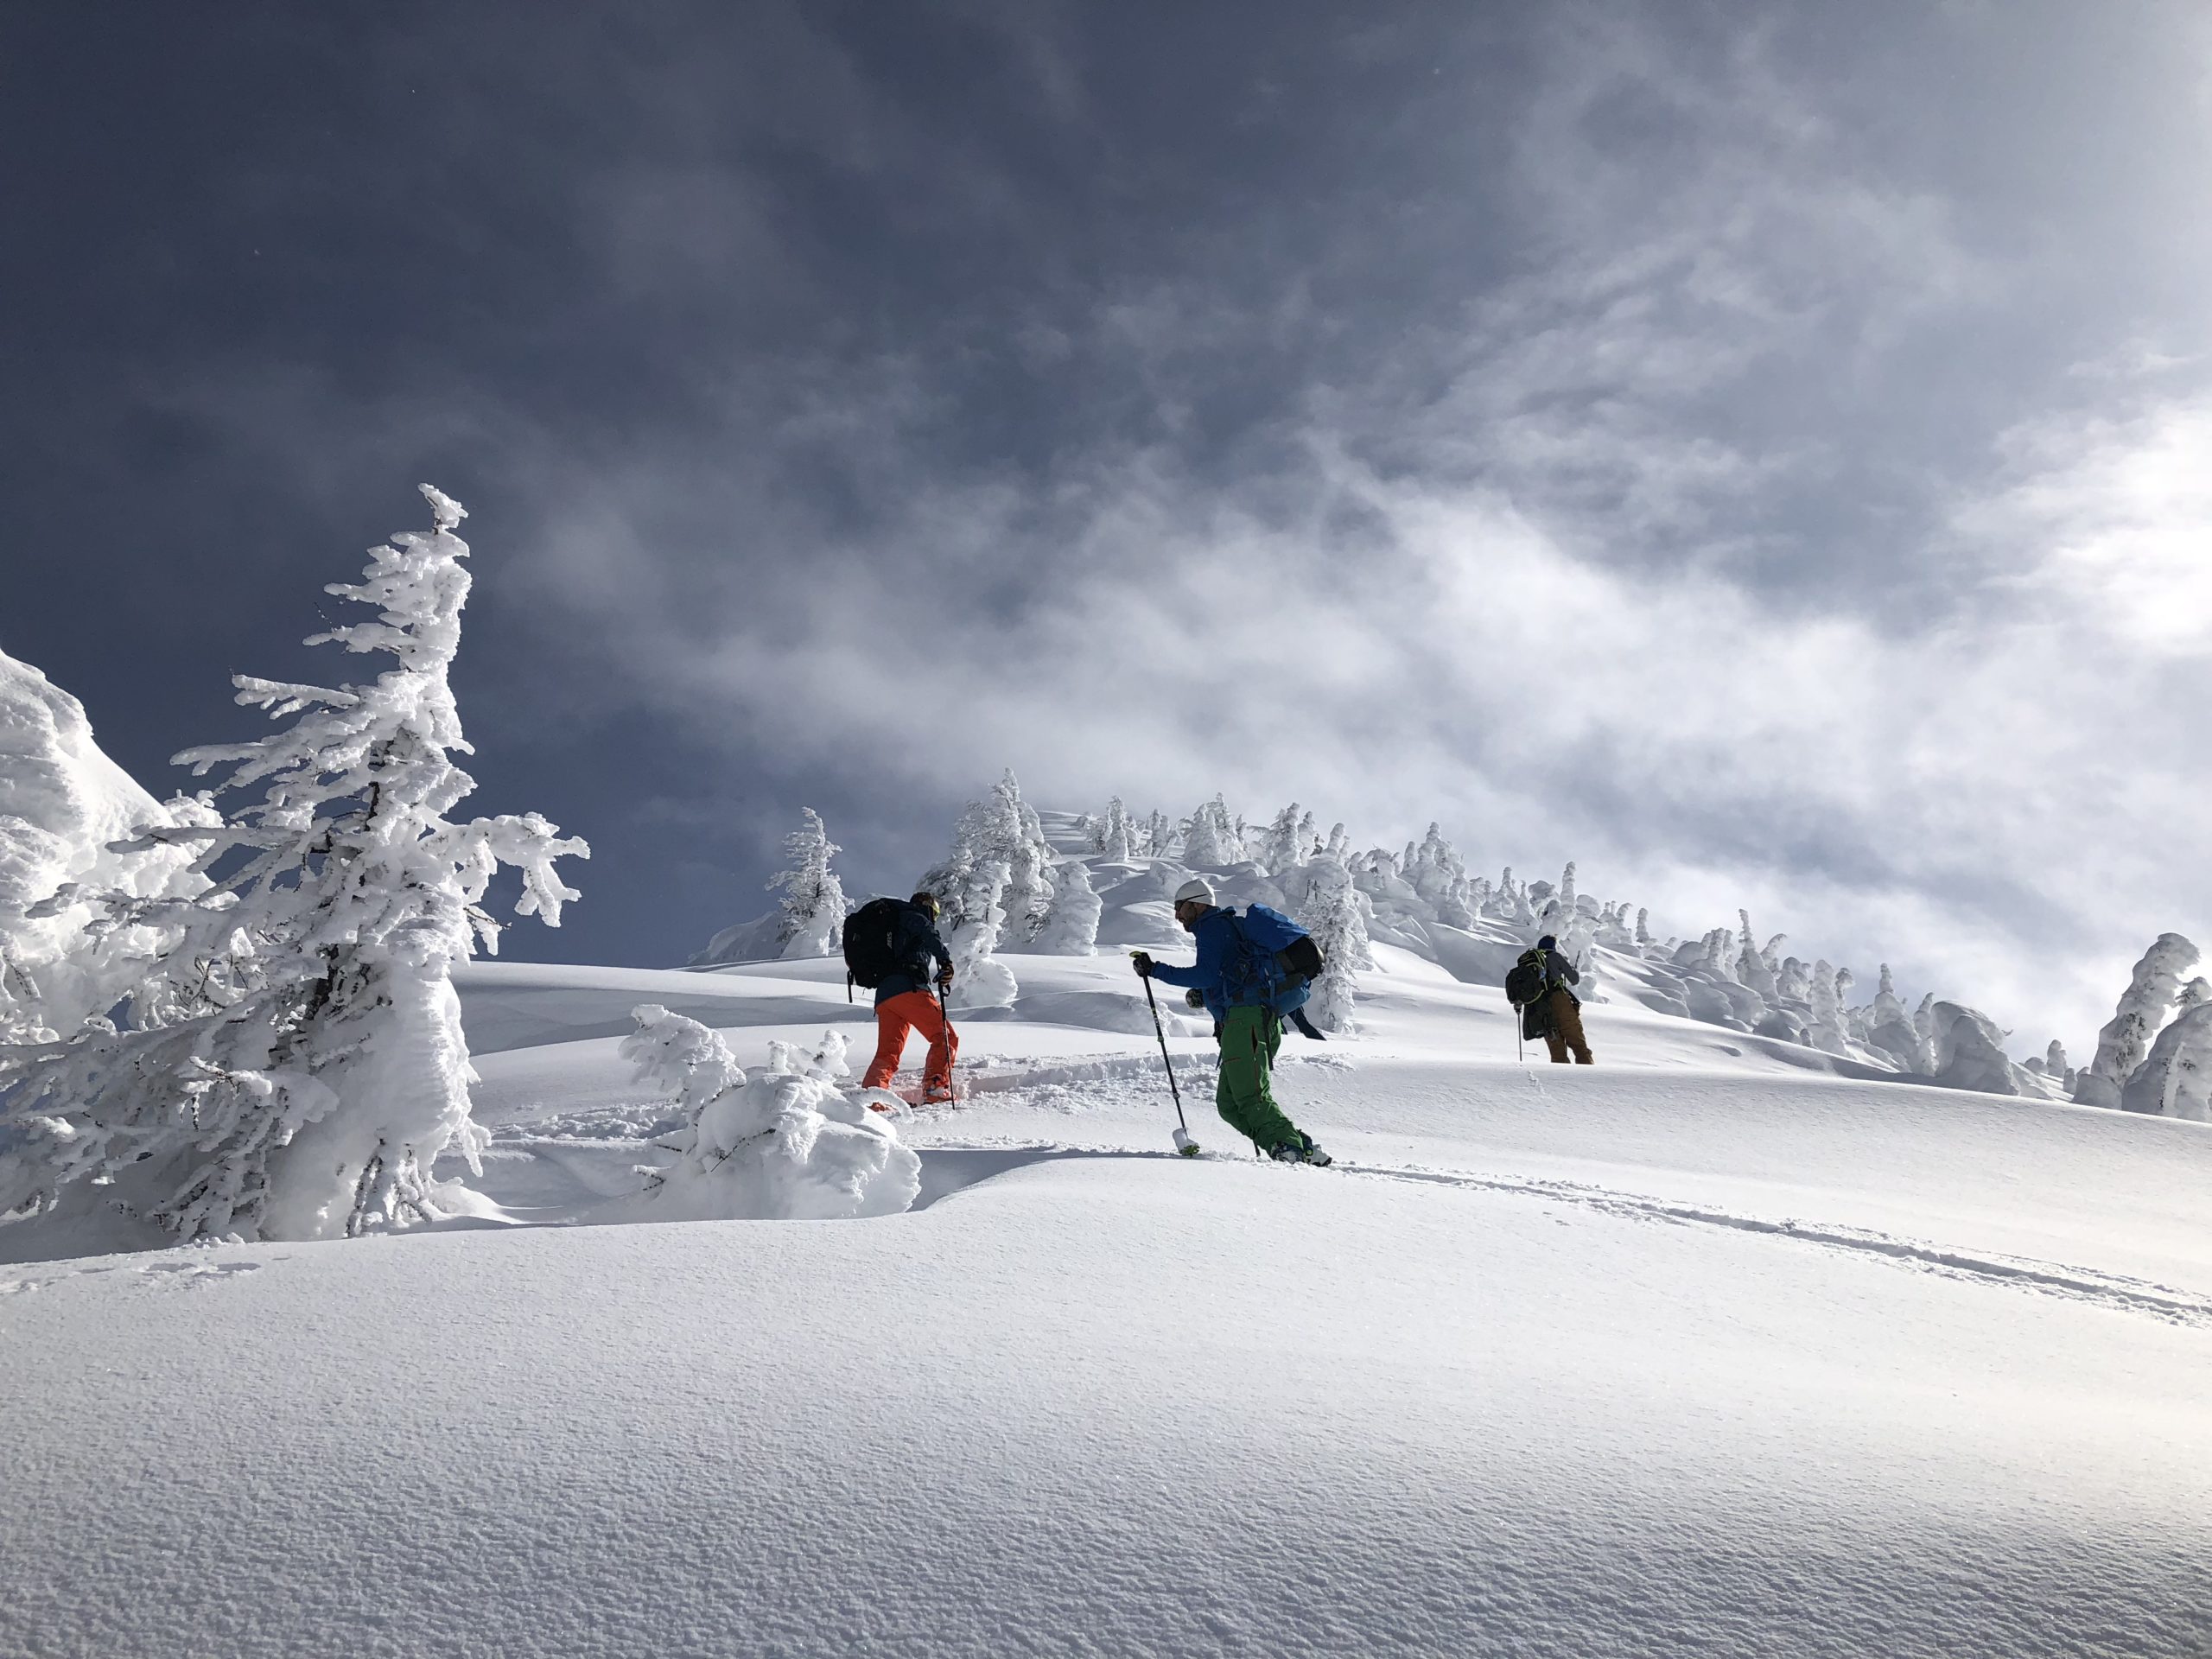 Découvrez le ski de randonnée avec 9 Vallées en France, Islande, Norvège, Argentine, Chili, Alaska, Groenland et Turquie.